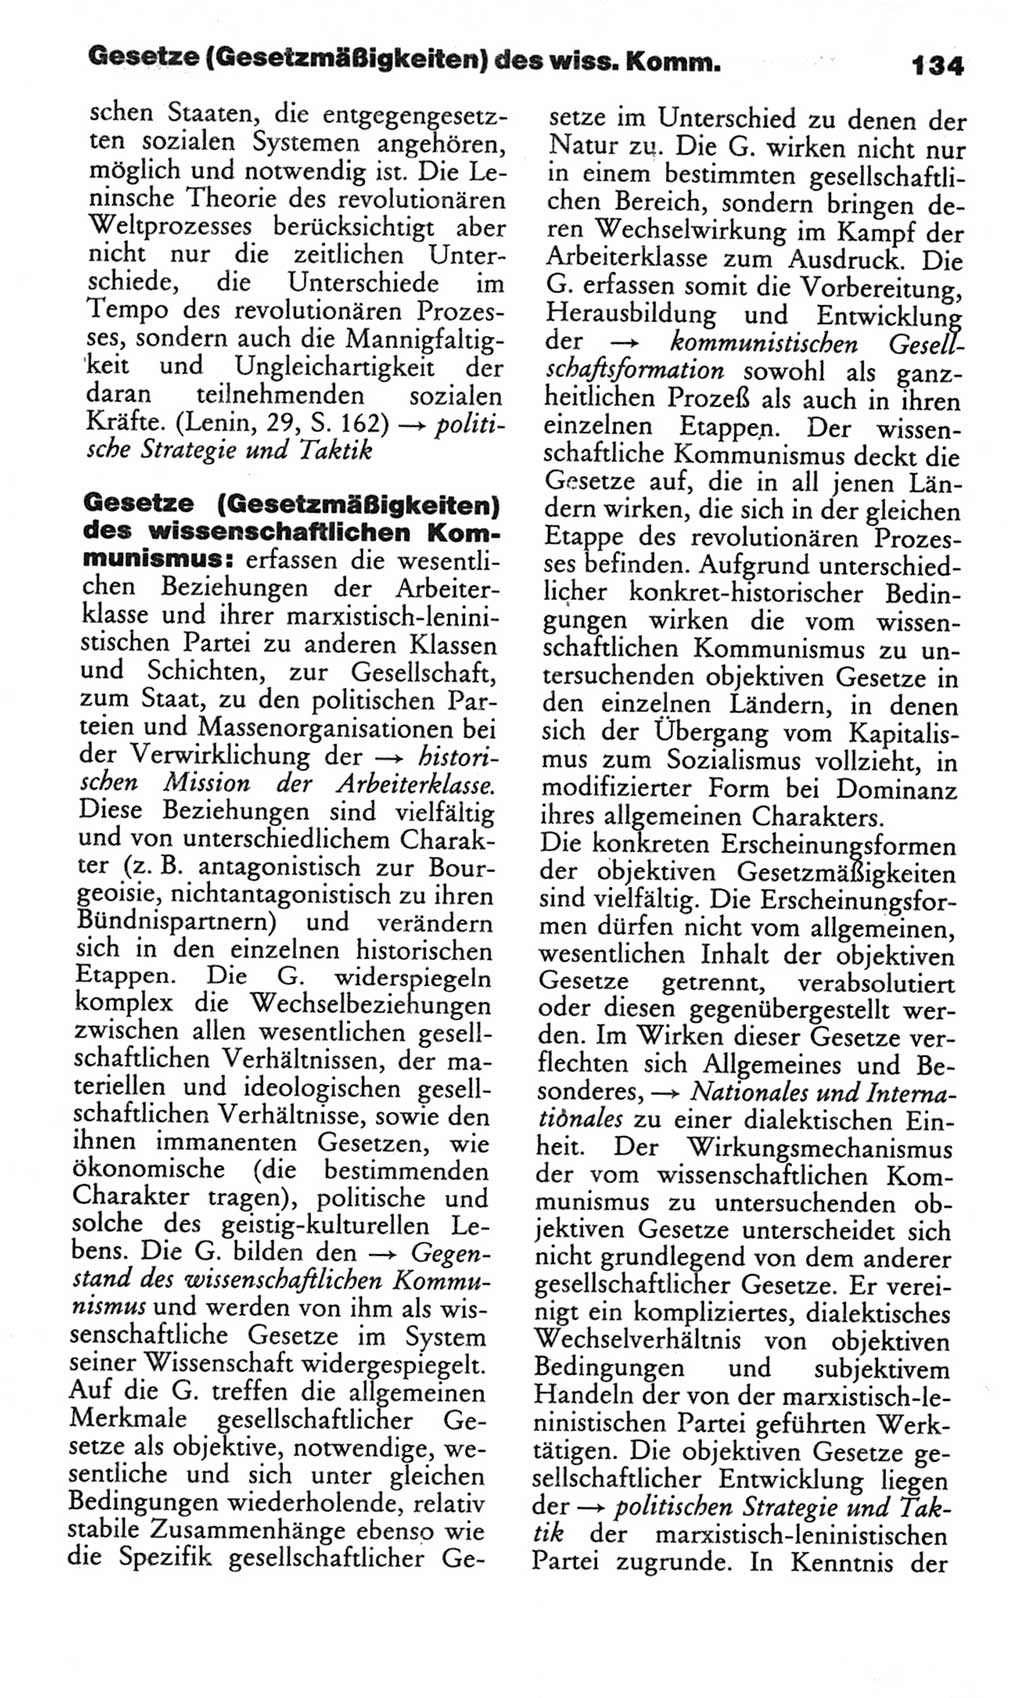 Wörterbuch des wissenschaftlichen Kommunismus [Deutsche Demokratische Republik (DDR)] 1982, Seite 134 (Wb. wiss. Komm. DDR 1982, S. 134)